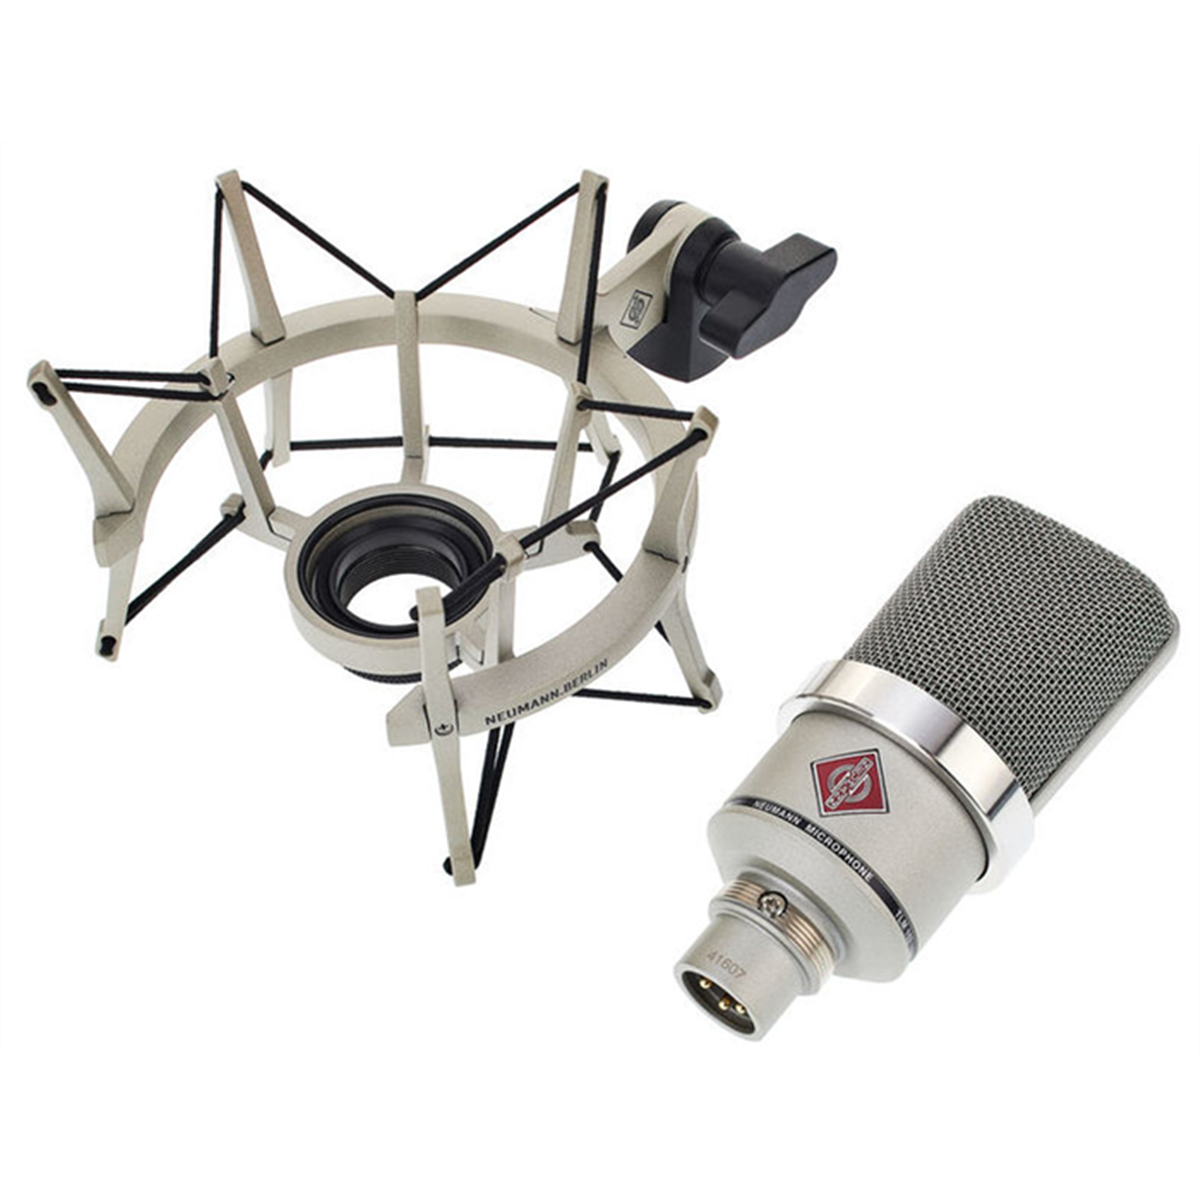 Neumann TLM-102 Studio Condenser Microphone (Nickel), Mic Stand